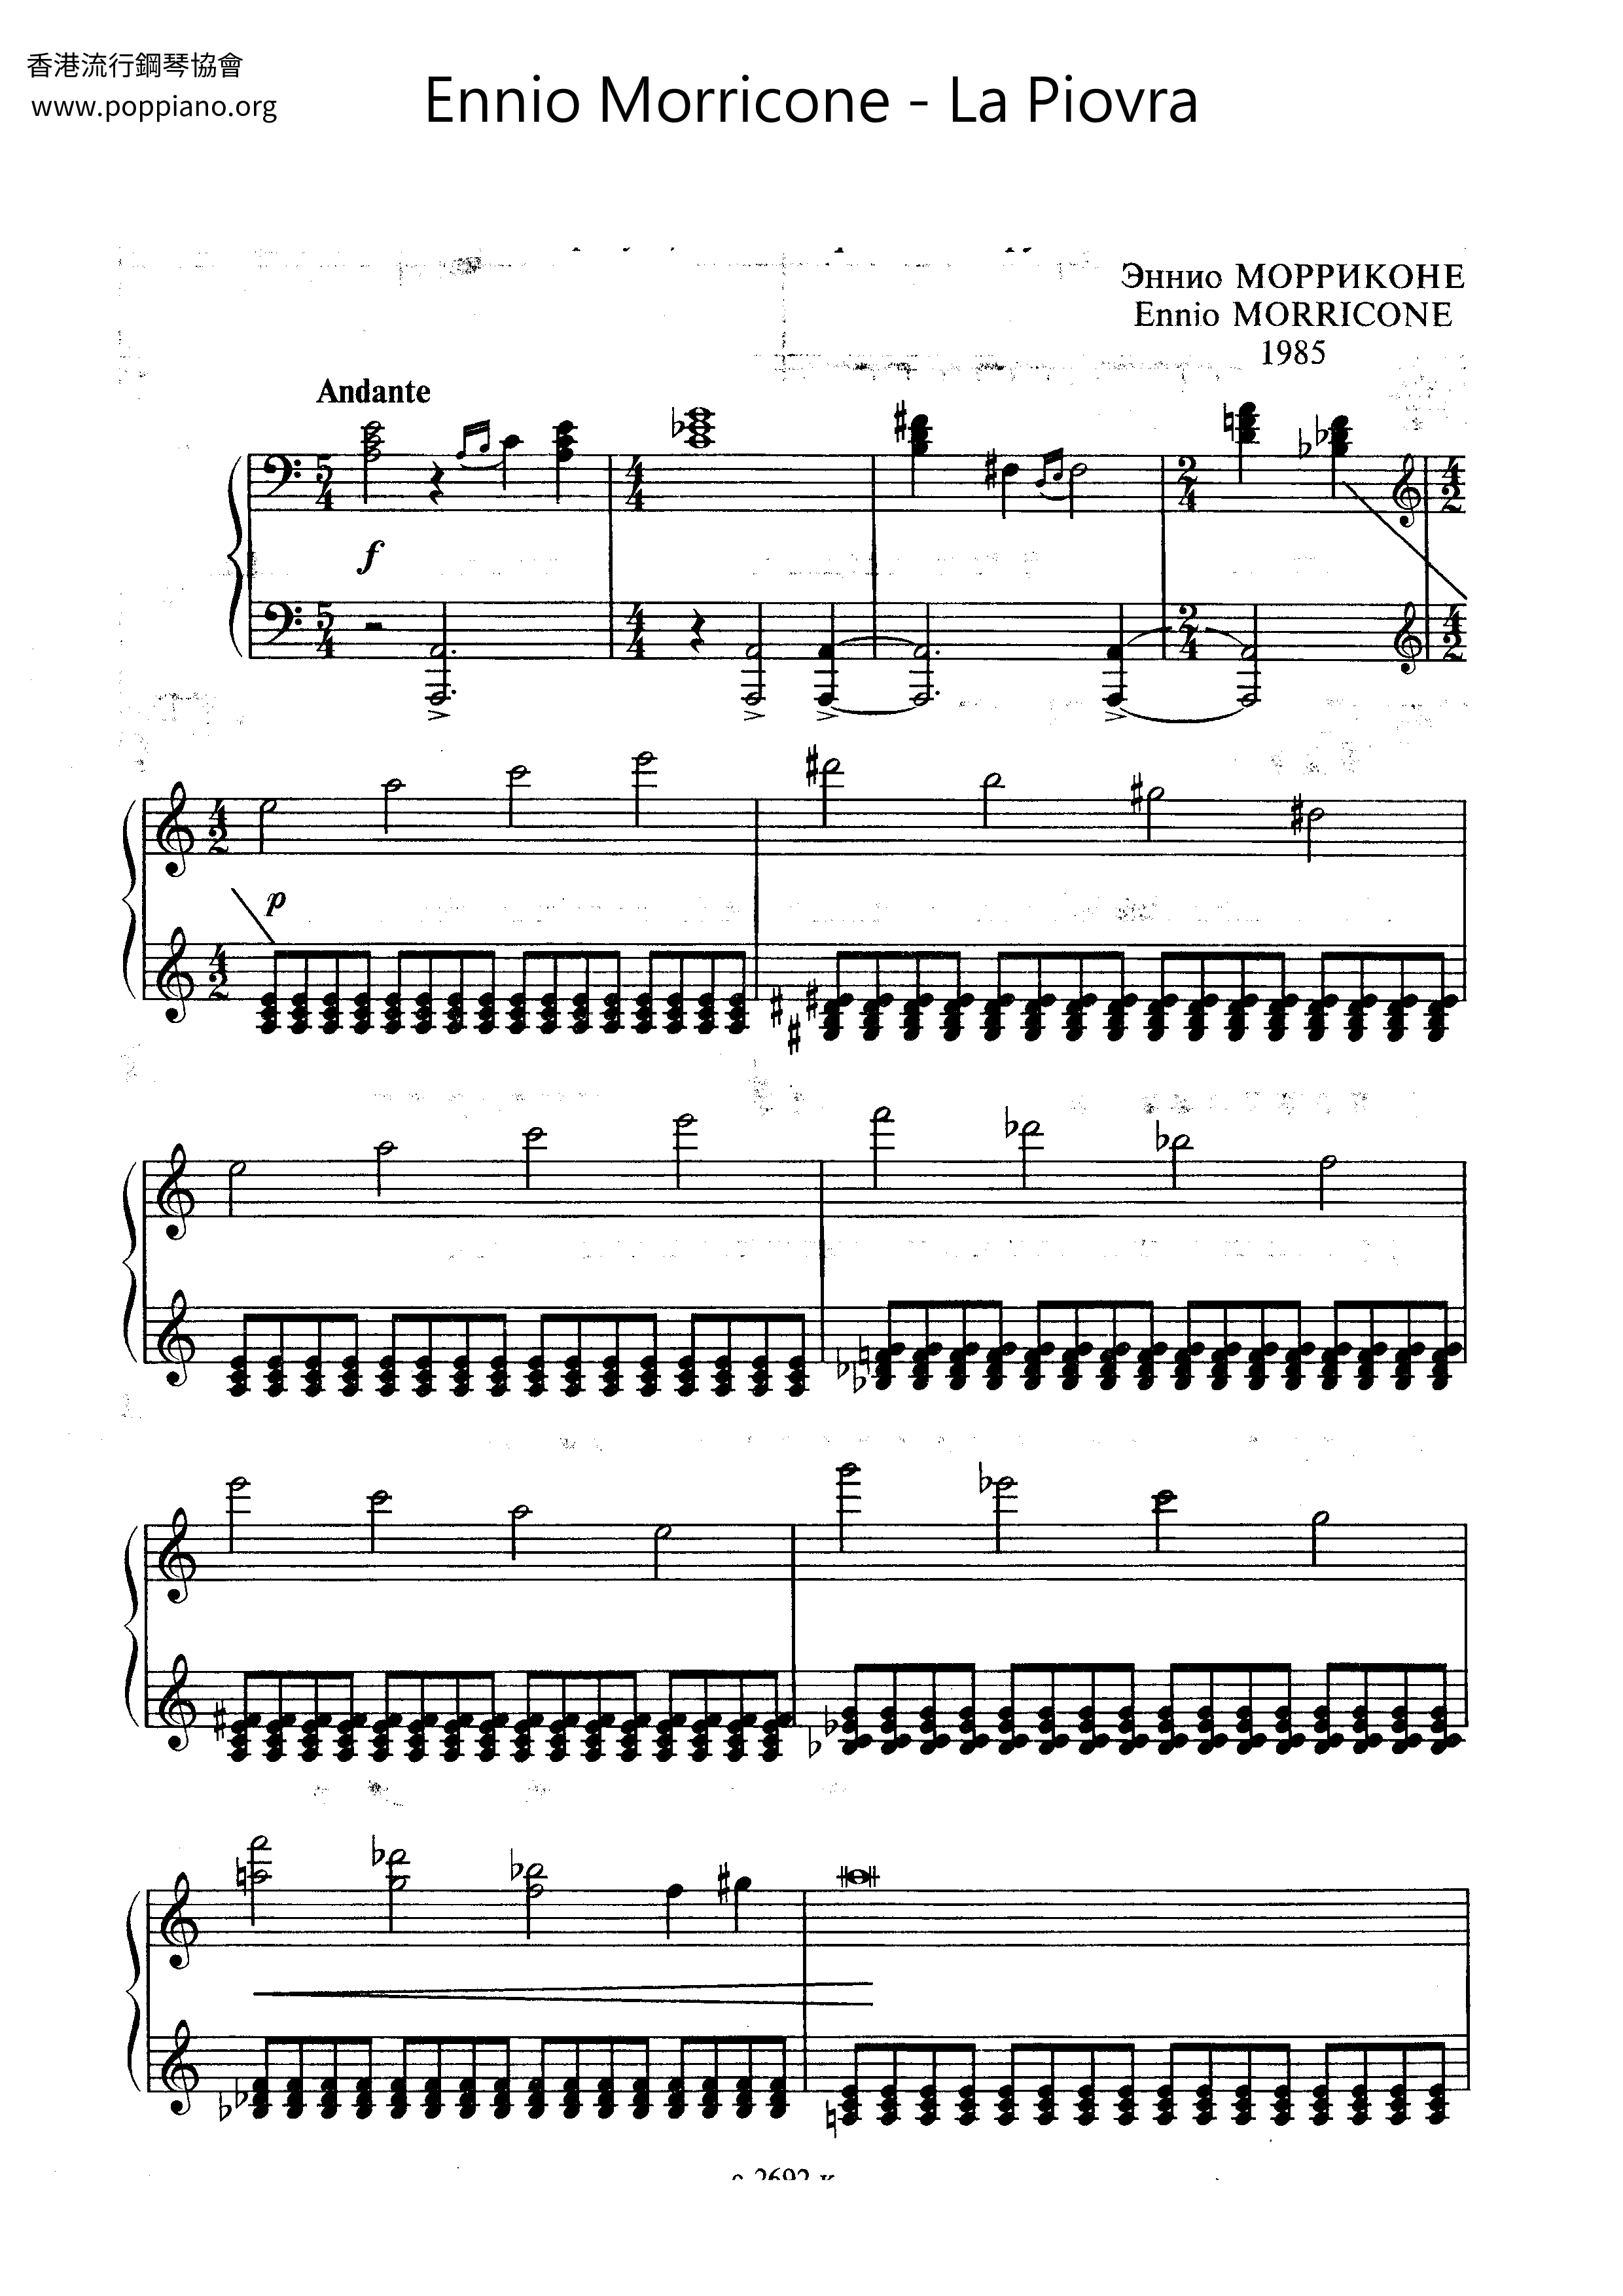 La Piovraピアノ譜